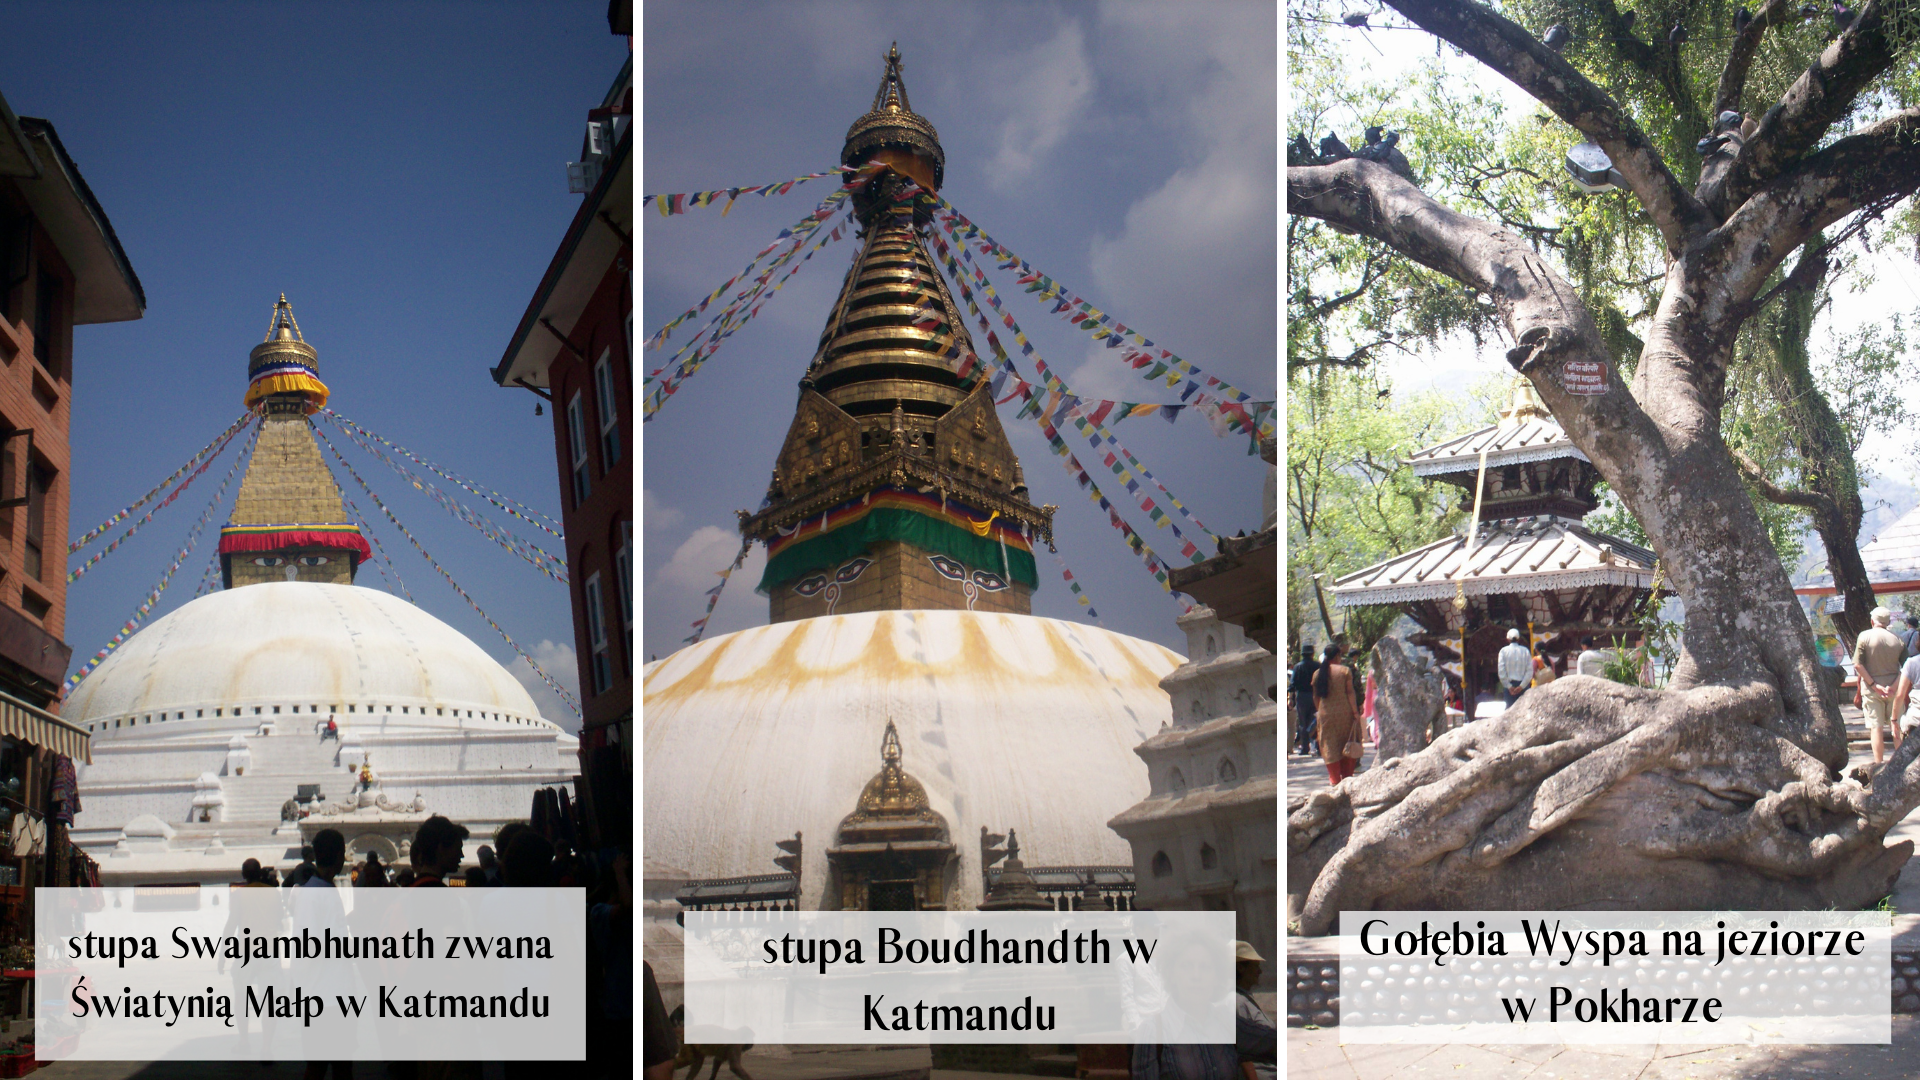 stupa Swajambhunath, stupa Boudhandth w Katmandu, Gołębia Wyspa na jeziorze w Pokharze